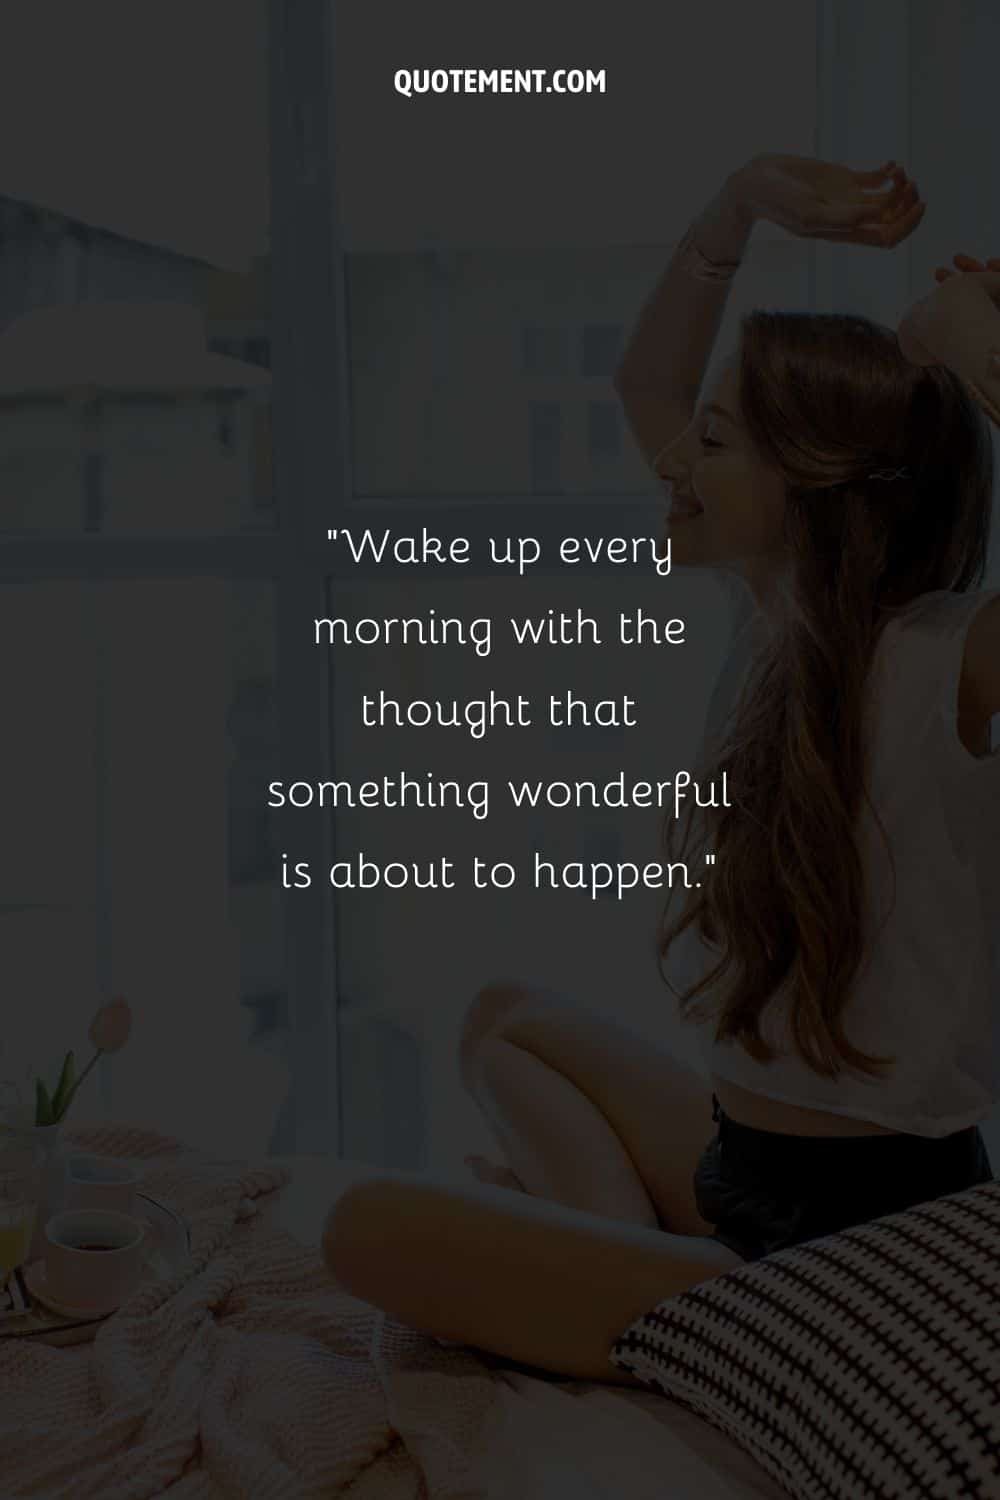 una niña sonriente sentada en su cama con los brazos en alto representando una cita inspiradora de la mañana